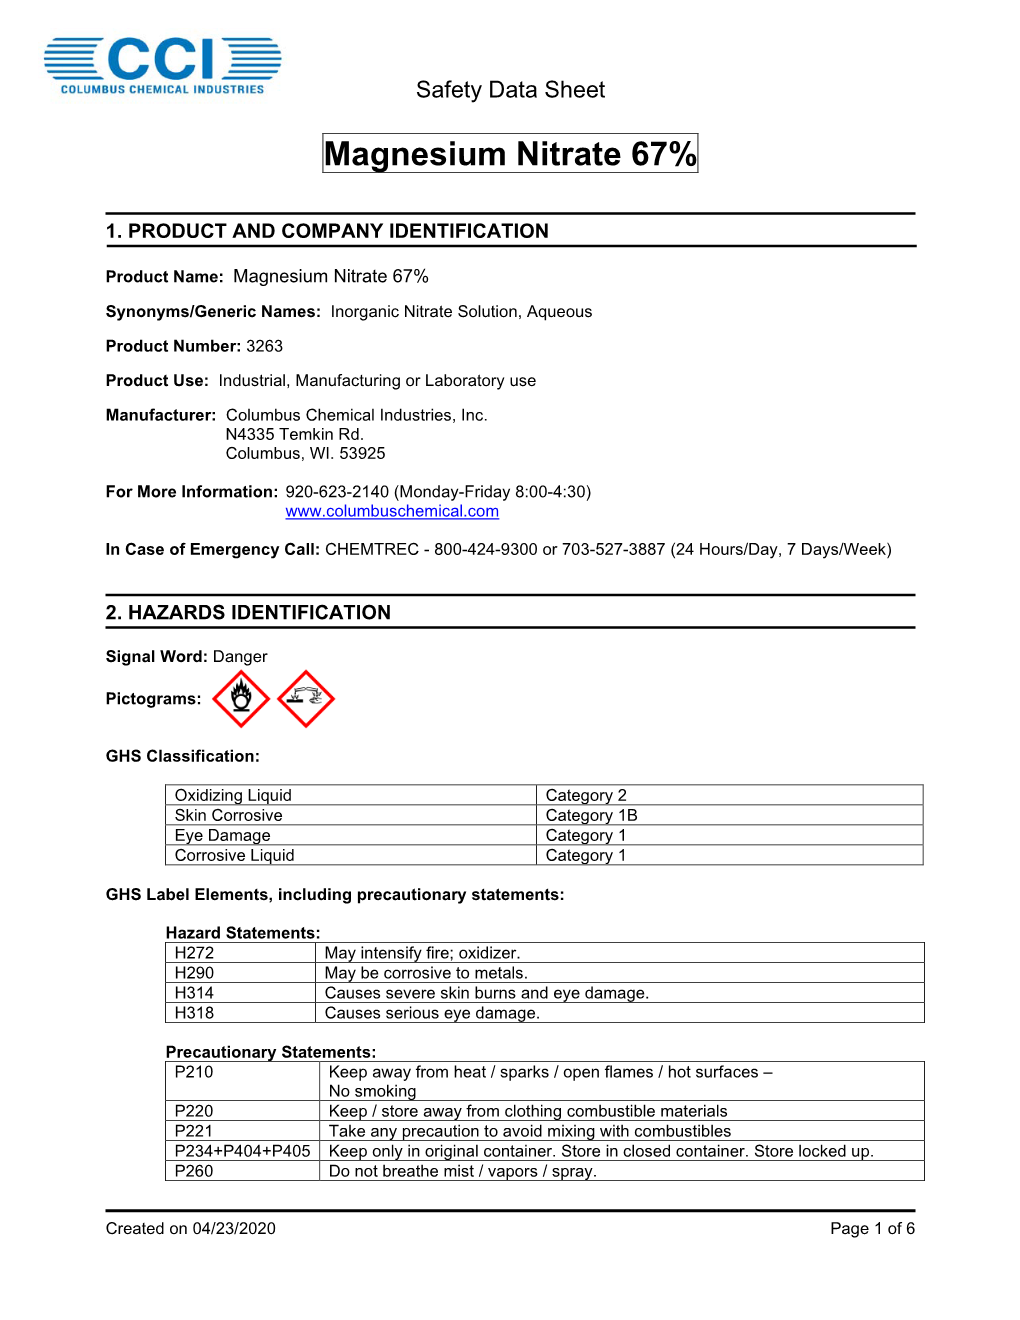 Magnesium Nitrate 67%